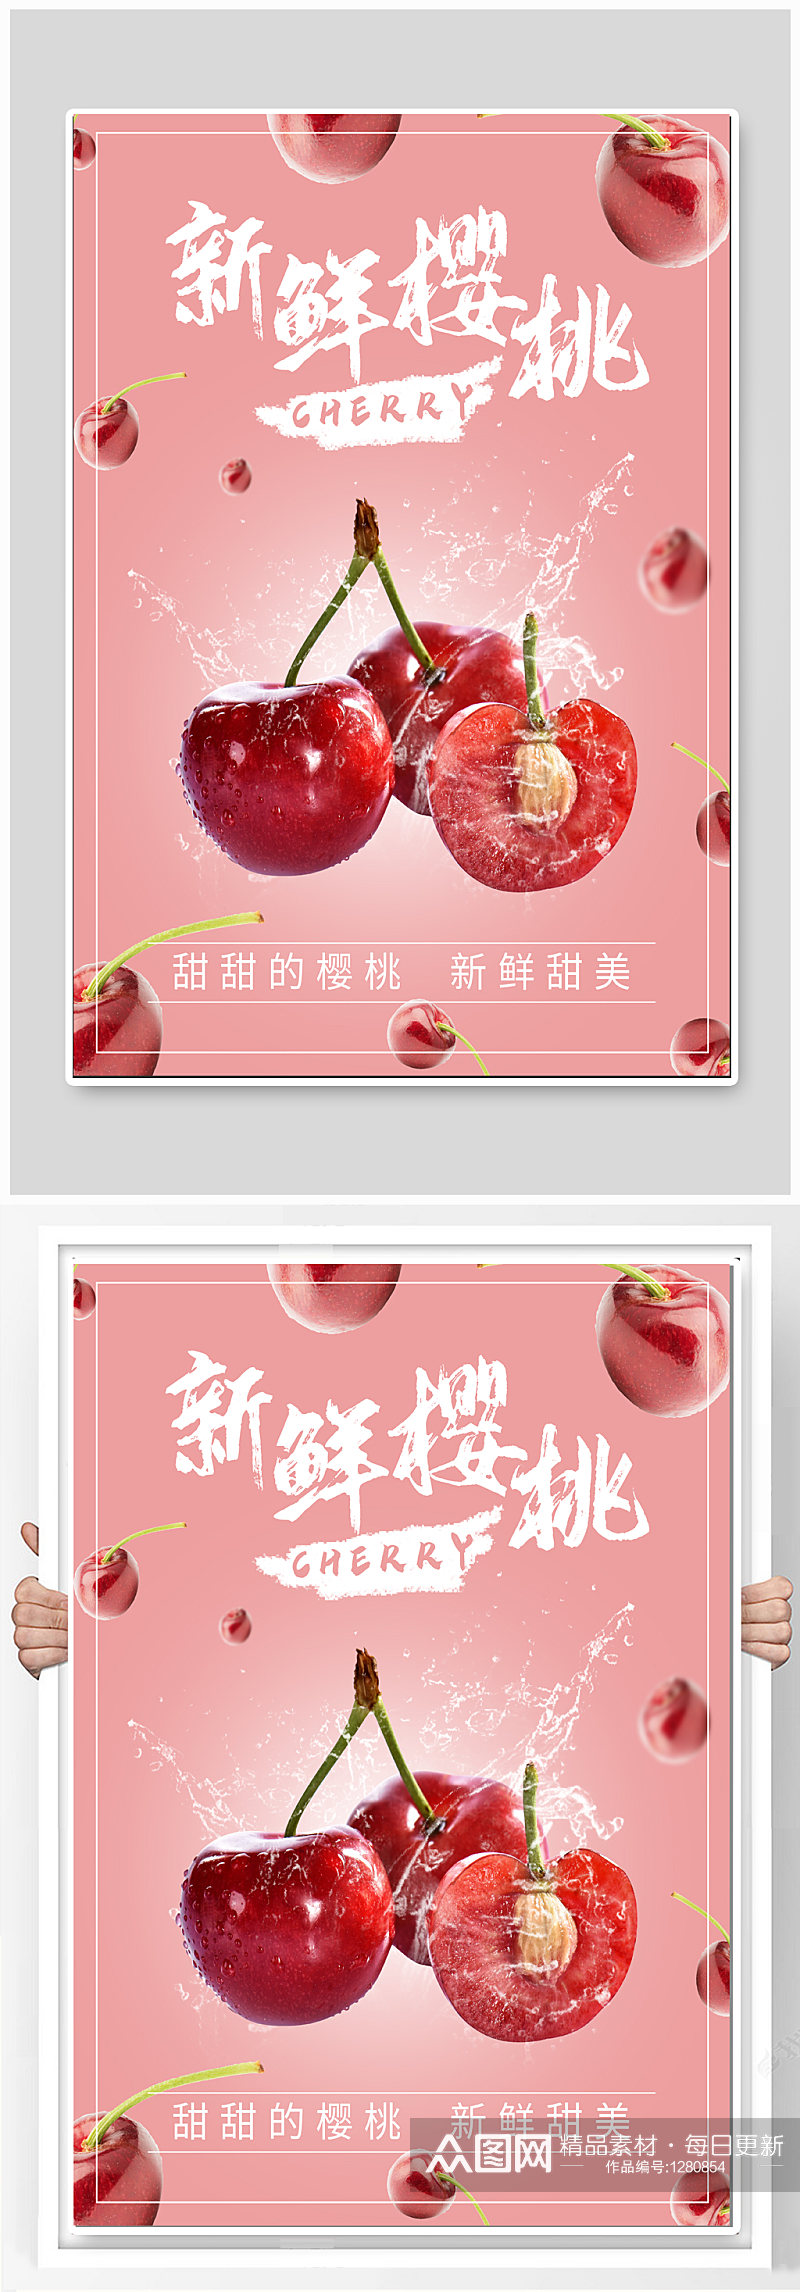 新鲜樱桃水果促销海报素材